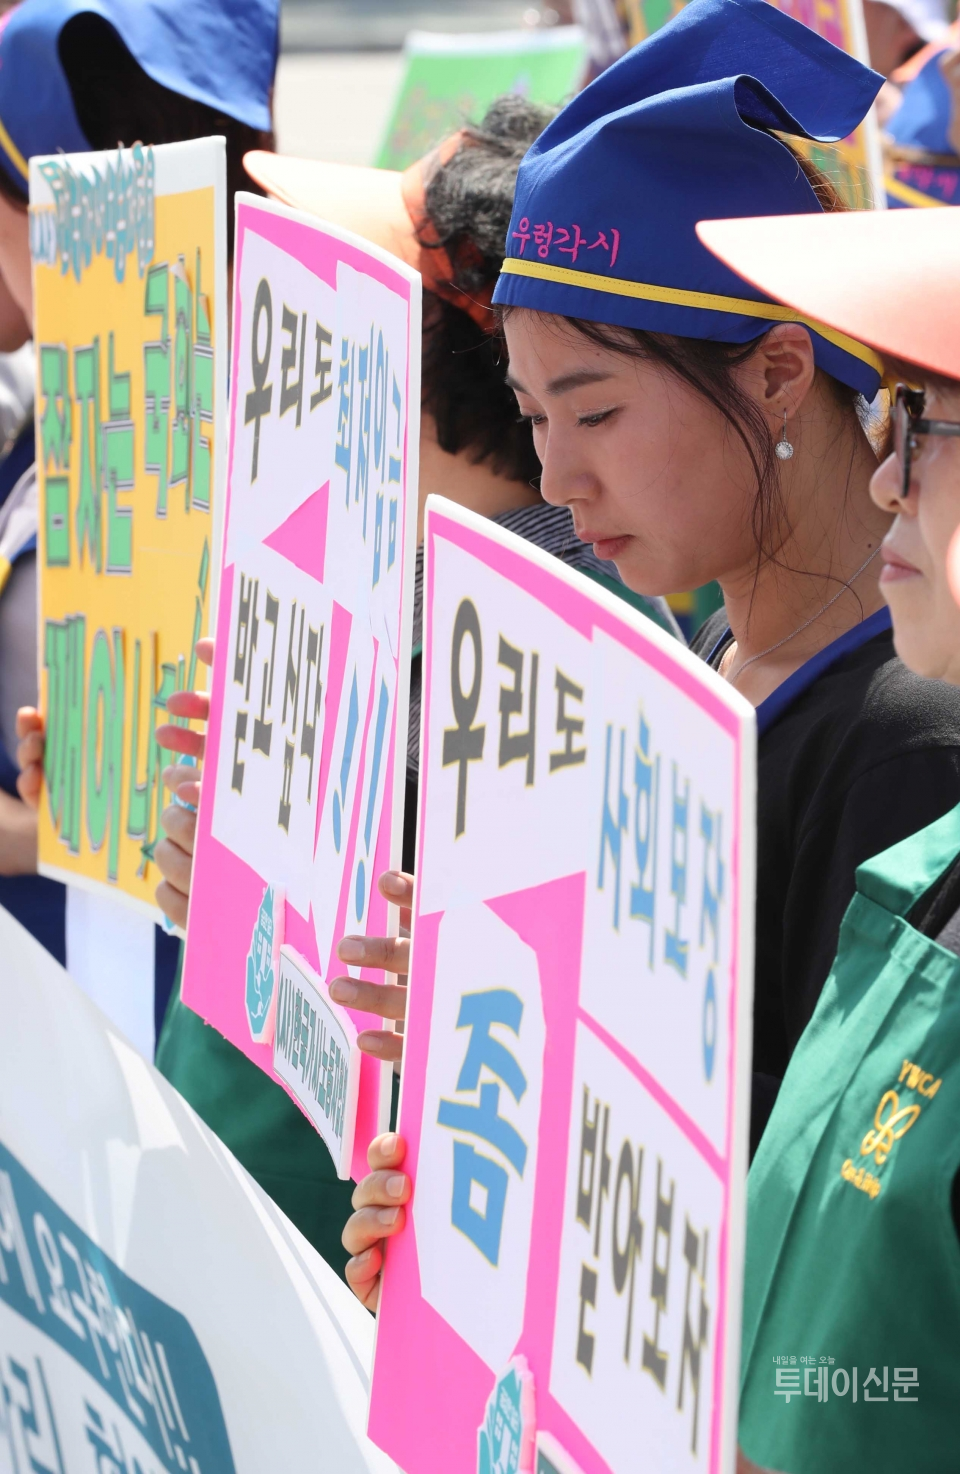 지난해 6월 18일 한국가사노동자협회, 우렁각시, 한국YWCA연합회원들의 ILO 가사노동자 일자리 협약 비준 고용개선 법률안의 조속한 처리 촉구 기자회견 ⓒ뉴시스